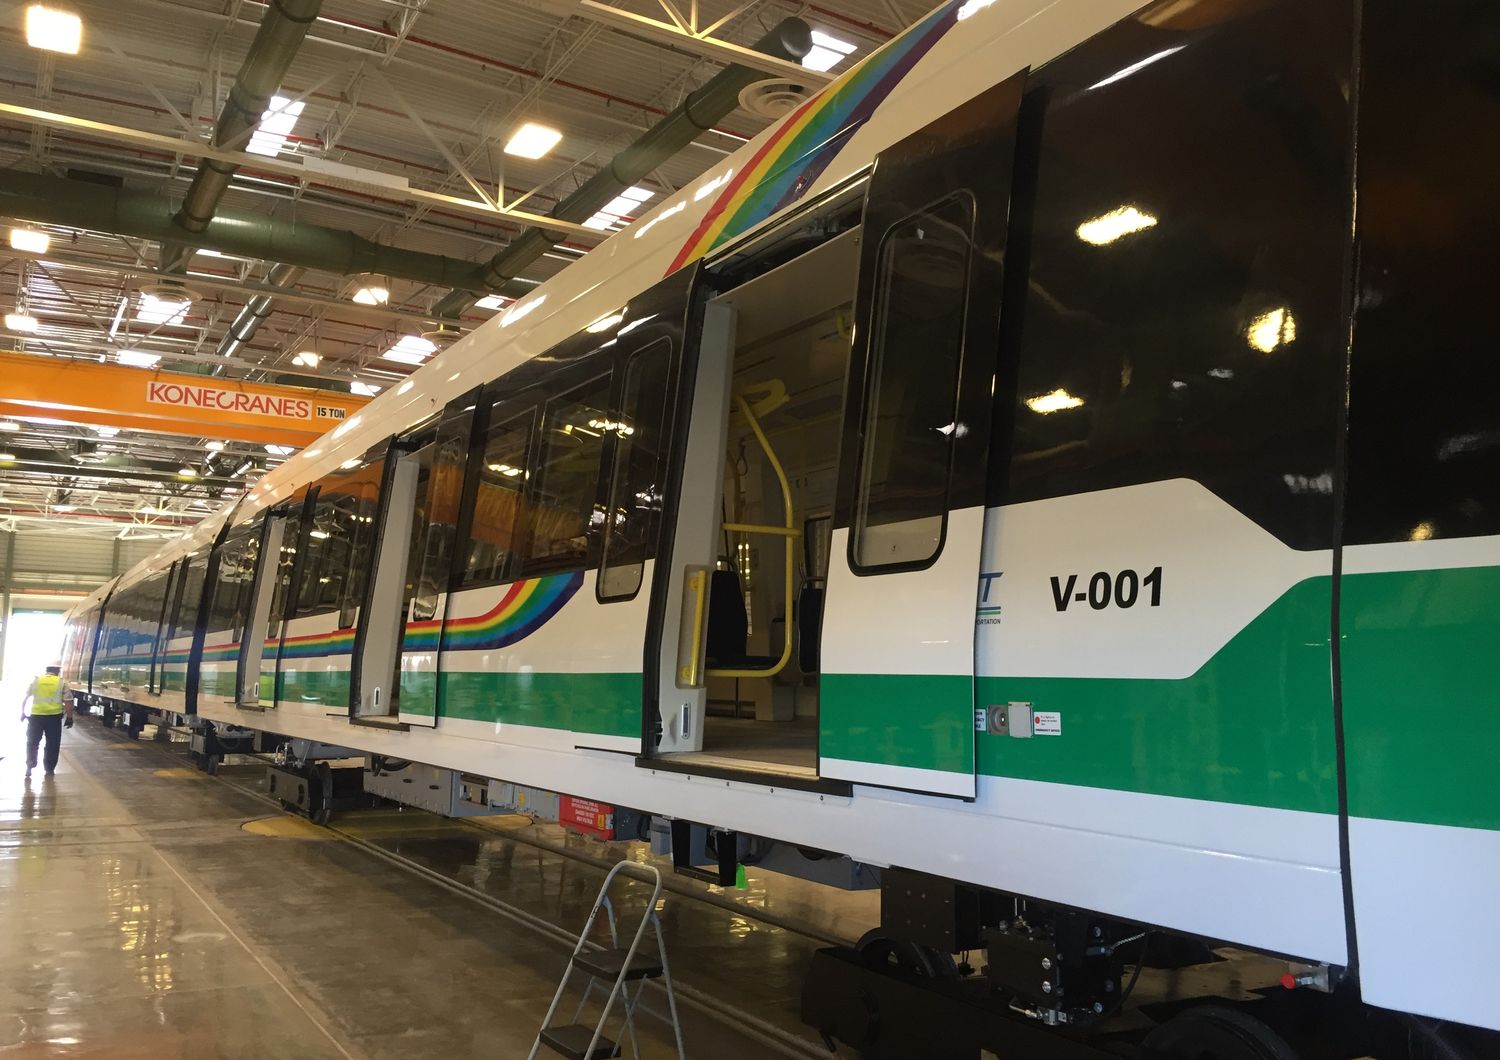 Ansaldo Honolulu: arriva primo treno metropolitana driverless Usa